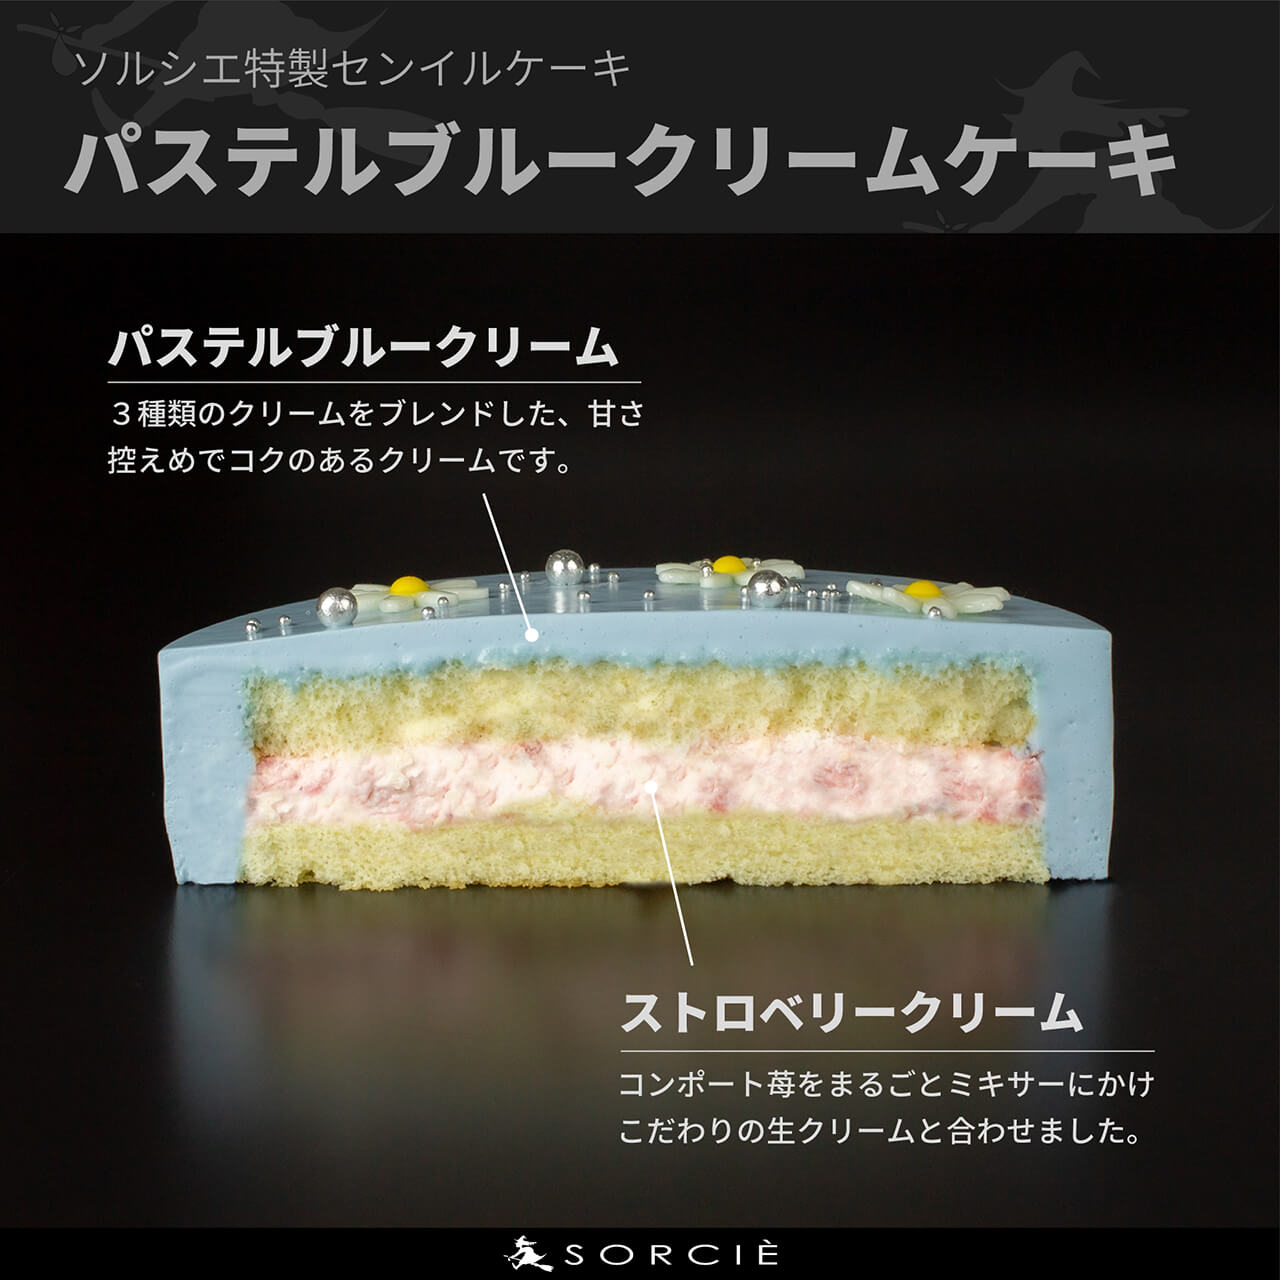 【店舗受取】センイルケーキ 4号サイズ 13.5cm 2人～4人分 約270g 【天然色素のみ使用】